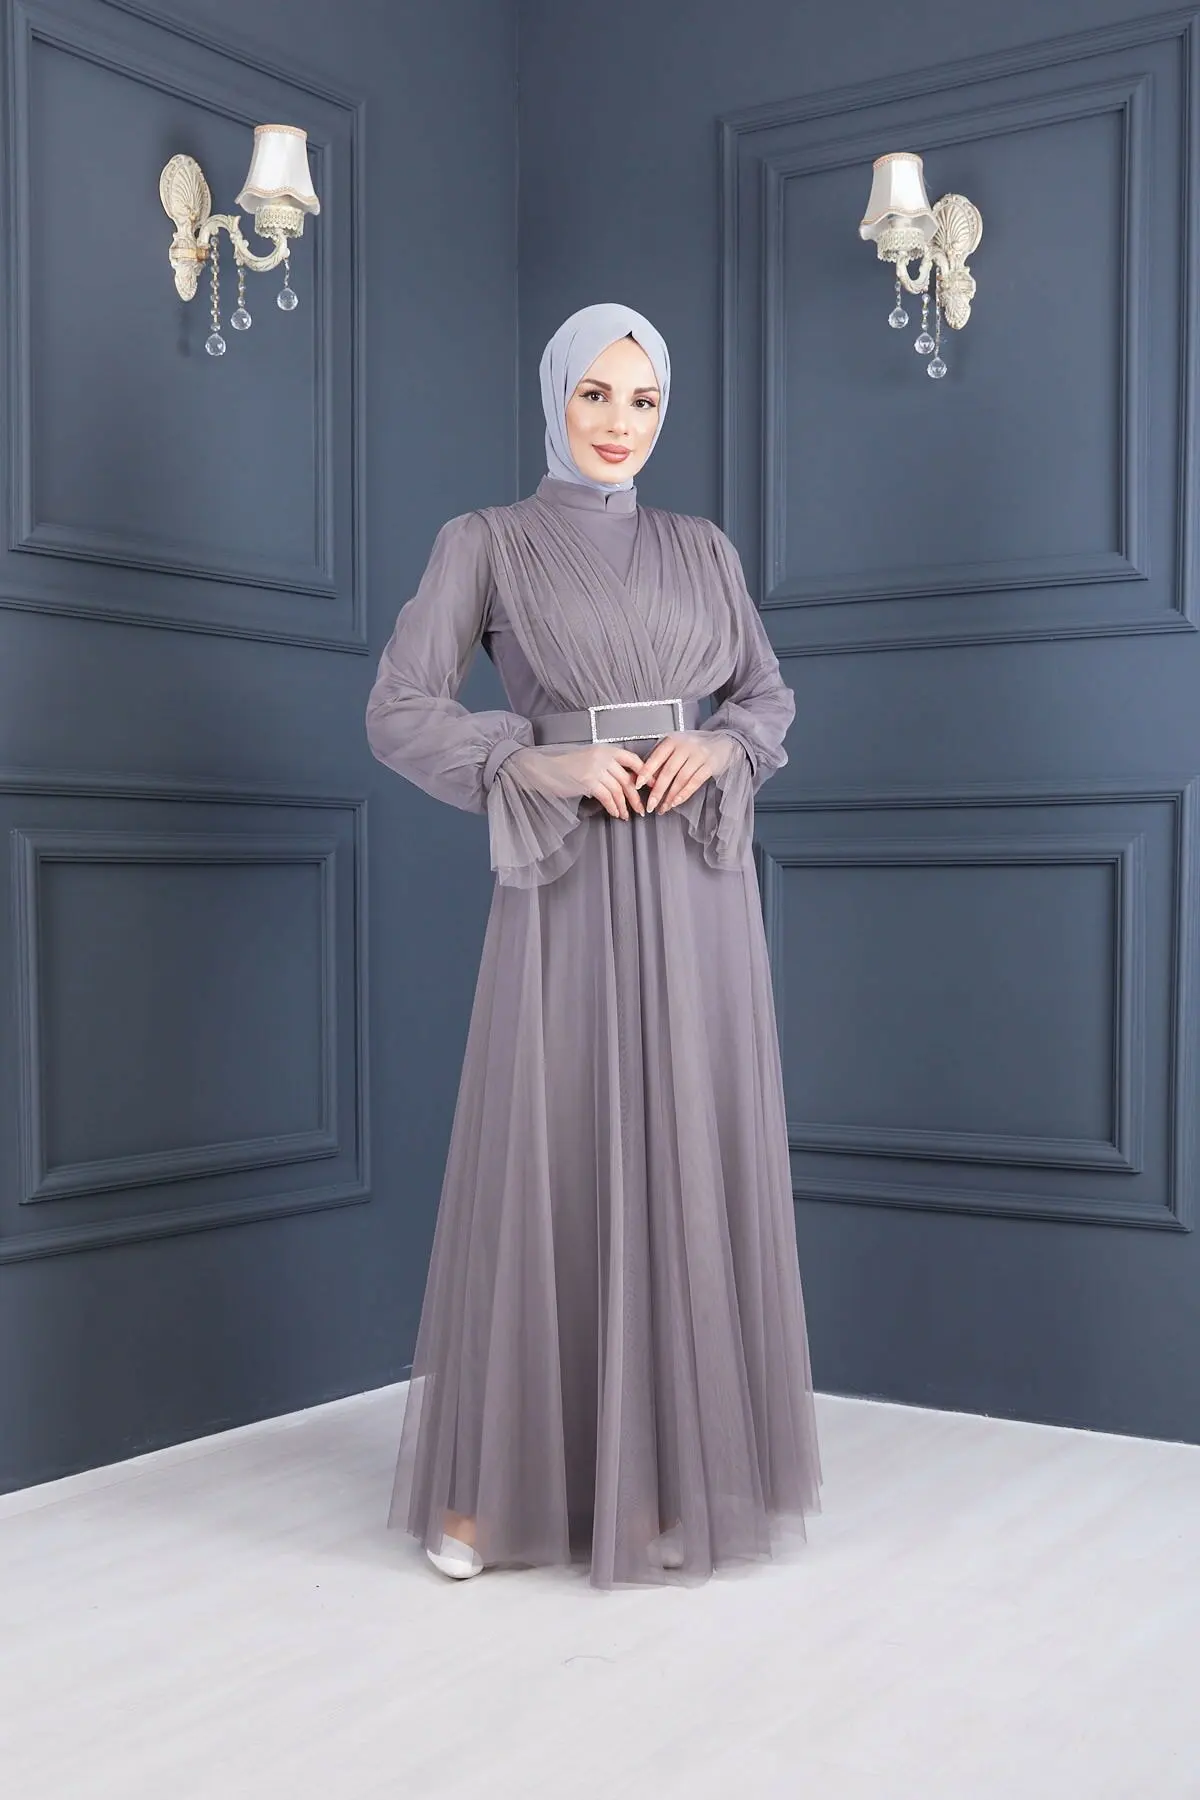 ИД атласное платье-абайя, мусульманское женское Однотонное Платье макси с запахом спереди, длинным рукавом и оборками, скромная одежда Дуба...